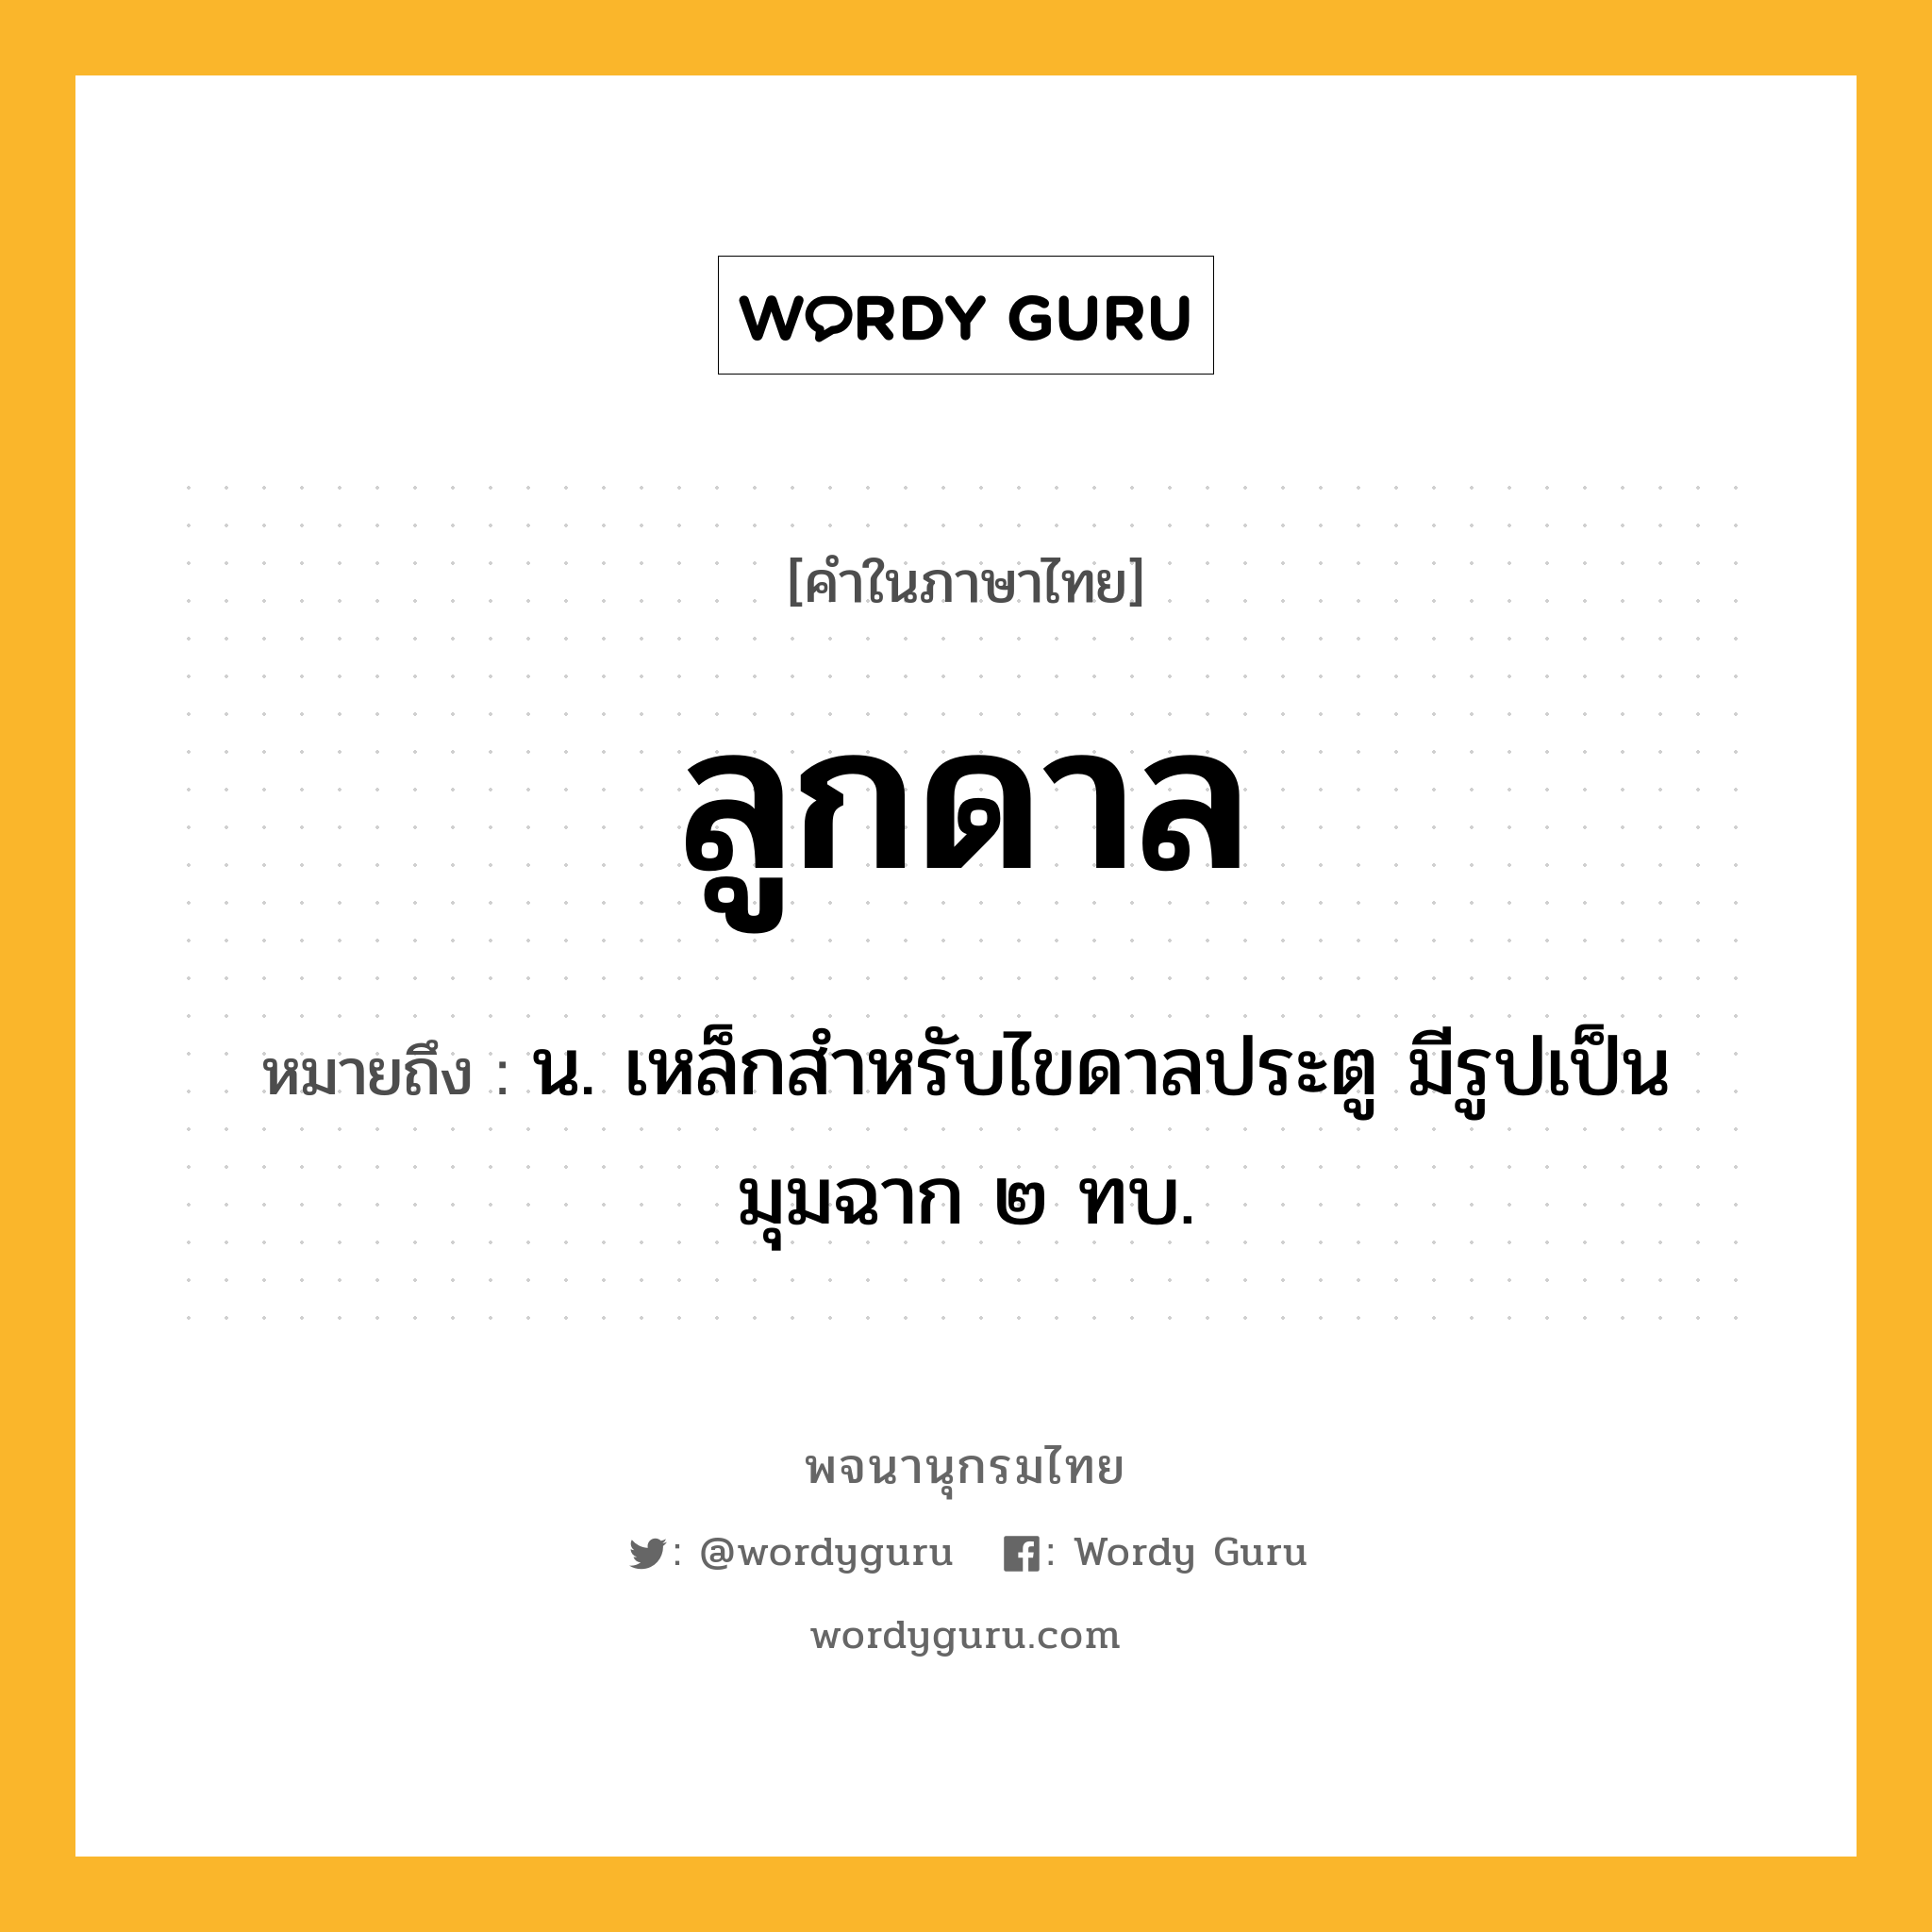 ลูกดาล ความหมาย หมายถึงอะไร?, คำในภาษาไทย ลูกดาล หมายถึง น. เหล็กสำหรับไขดาลประตู มีรูปเป็นมุมฉาก ๒ ทบ.